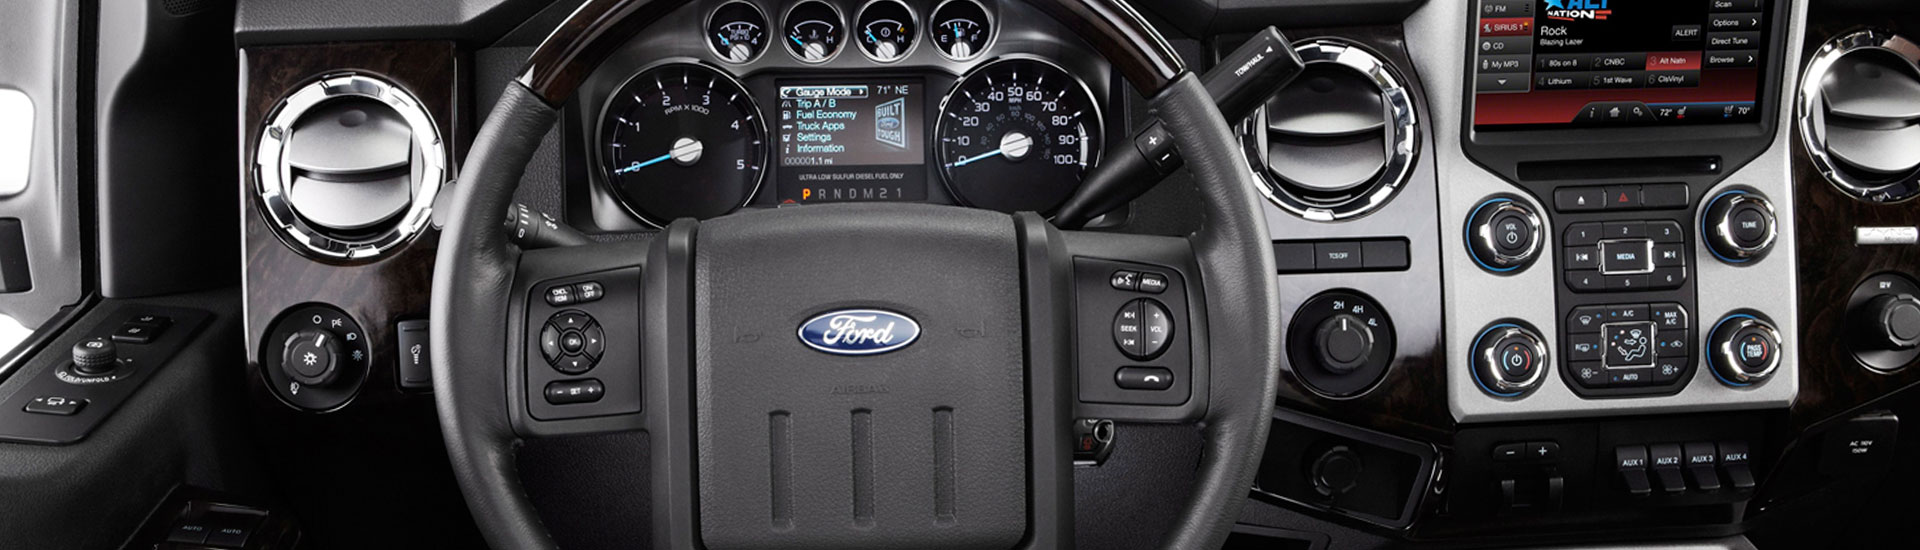 Chrome dash kit inside Ford